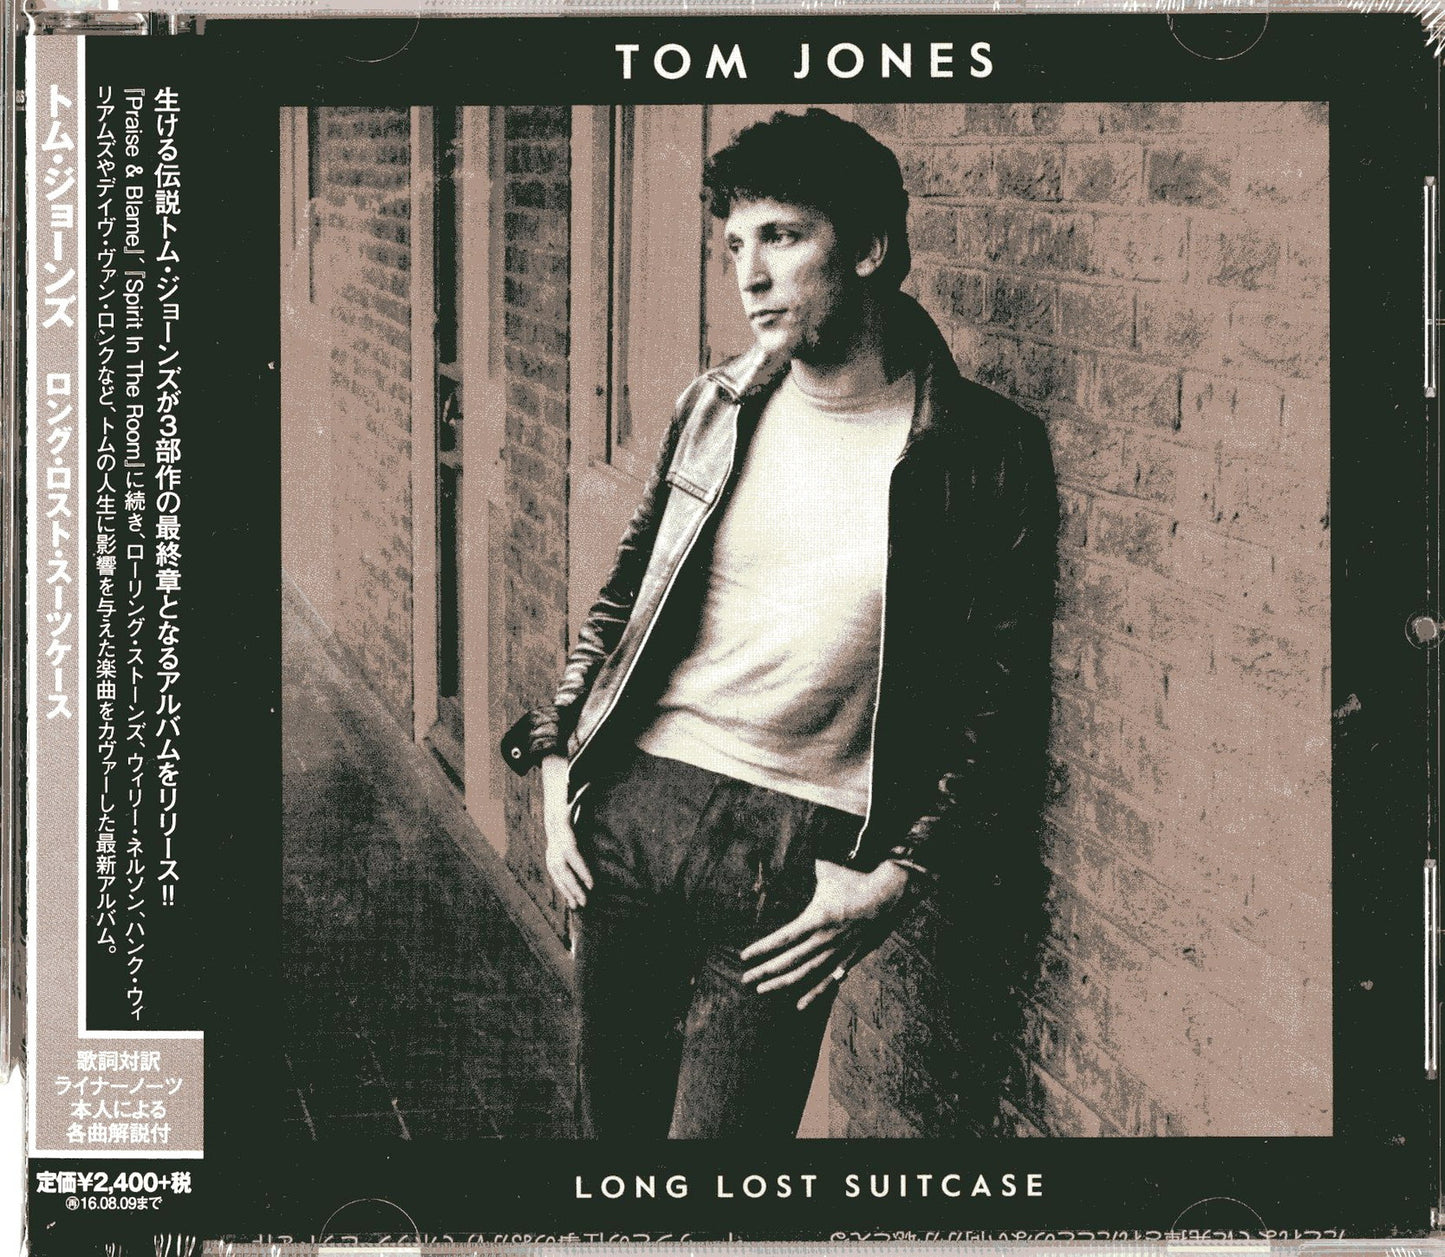 Tom Jones - Long Lost Suitcase - Japan CD